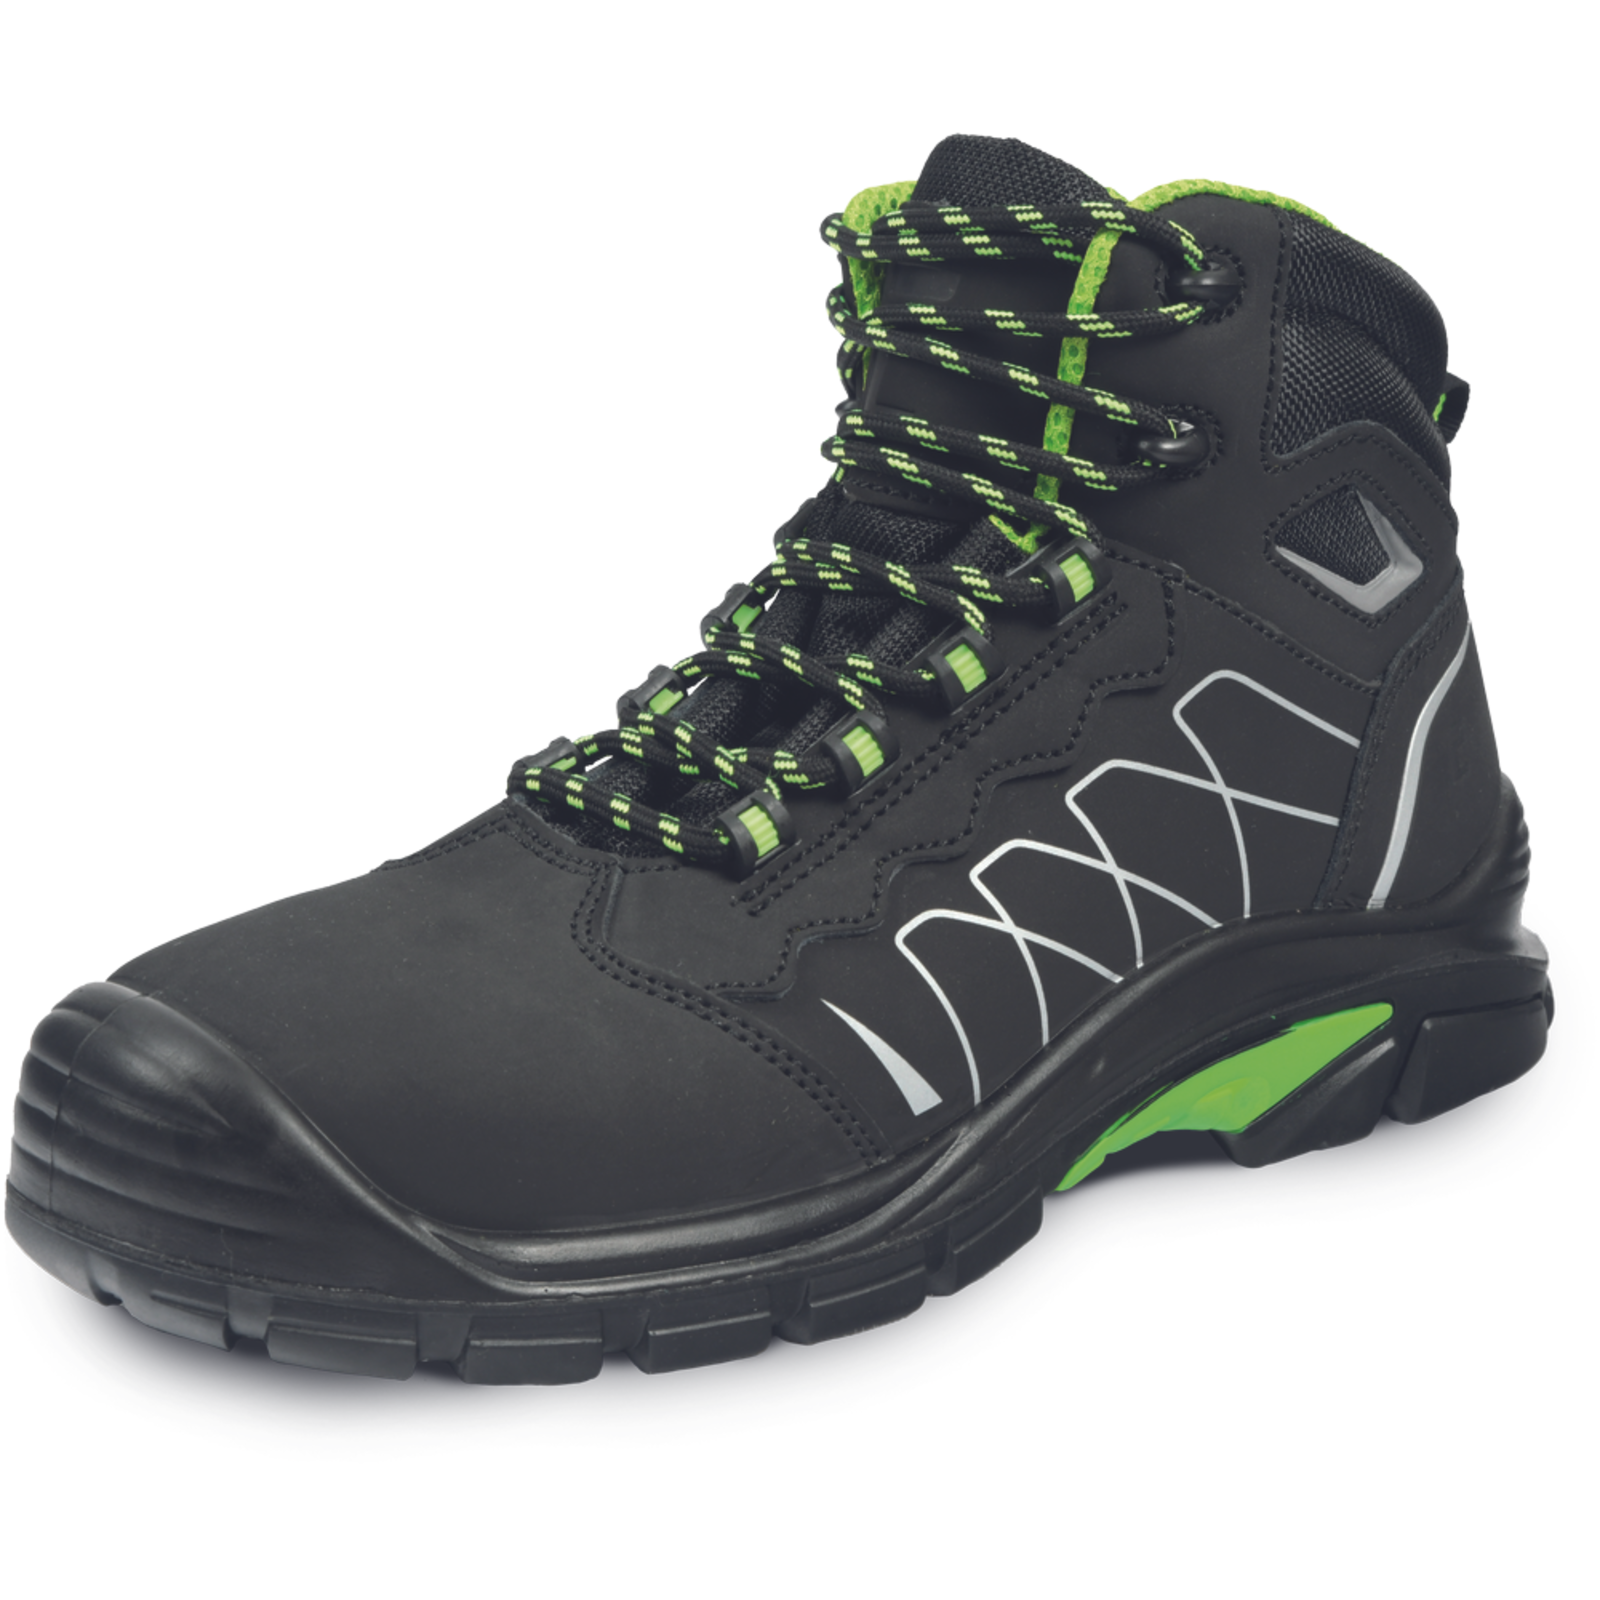 Bezpečnostná členková obuv Cerva Tornafort MF S3 SRC - veľkosť: 42, farba: čierna/zelená